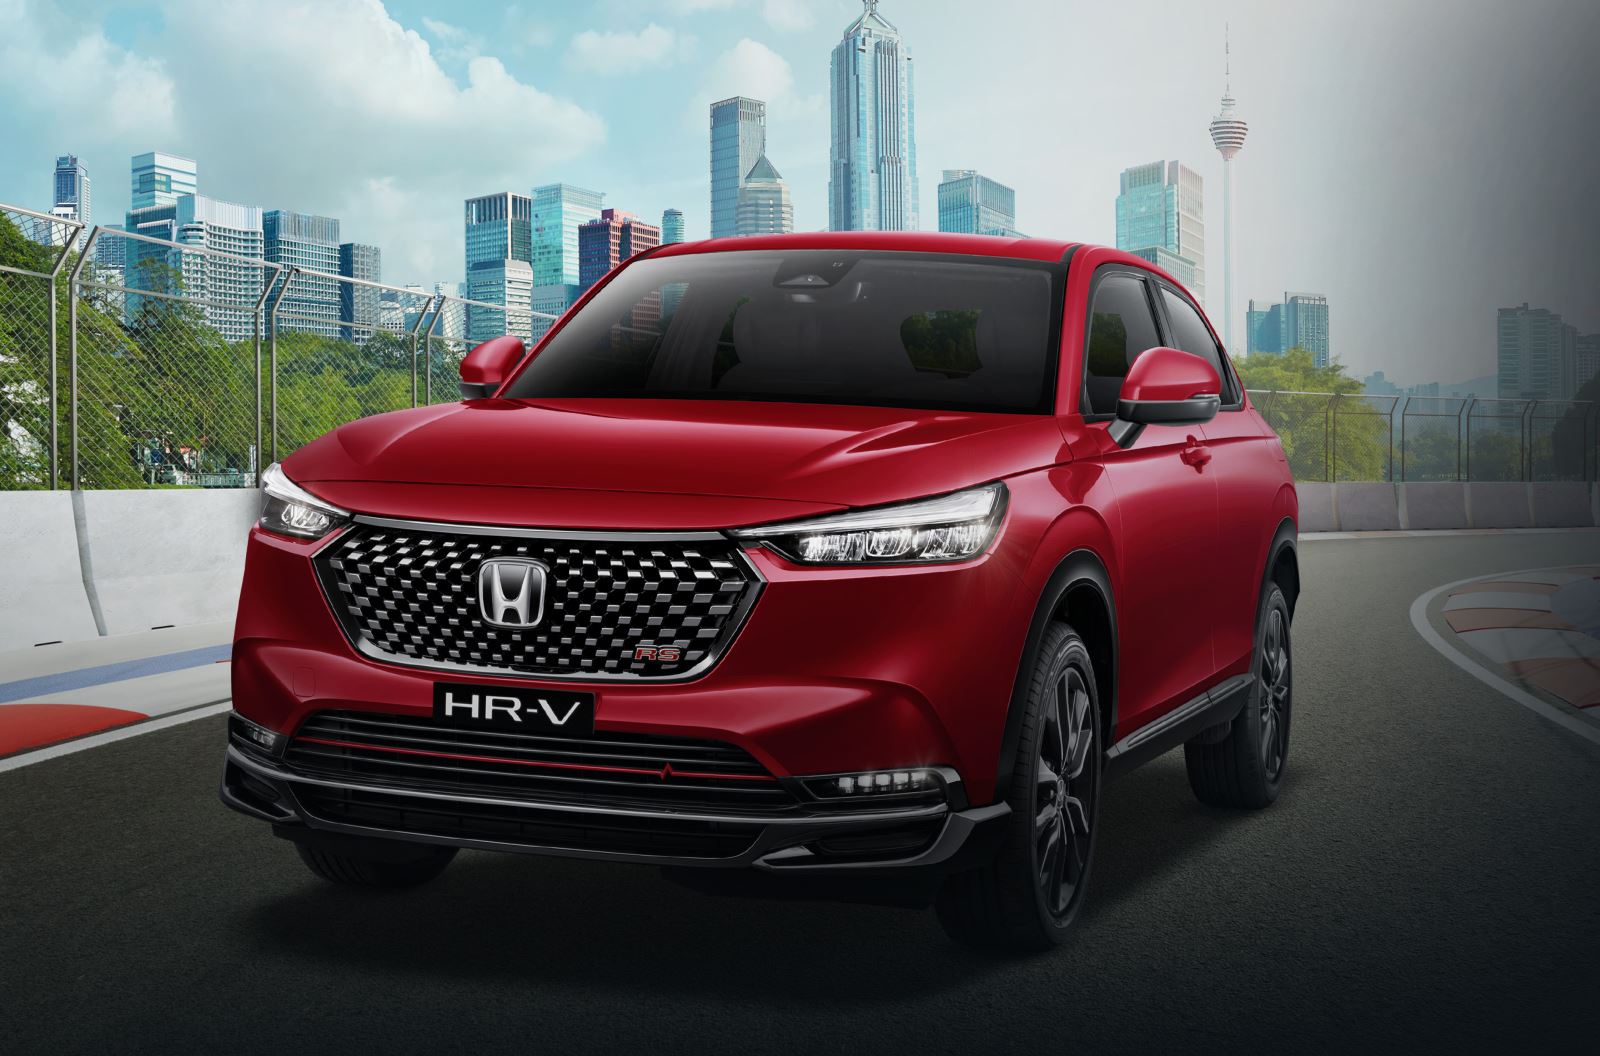 Honda HR-V thế hệ thứ 2 sẽ mang đến một chuyến đi thoải mái và dễ chịu